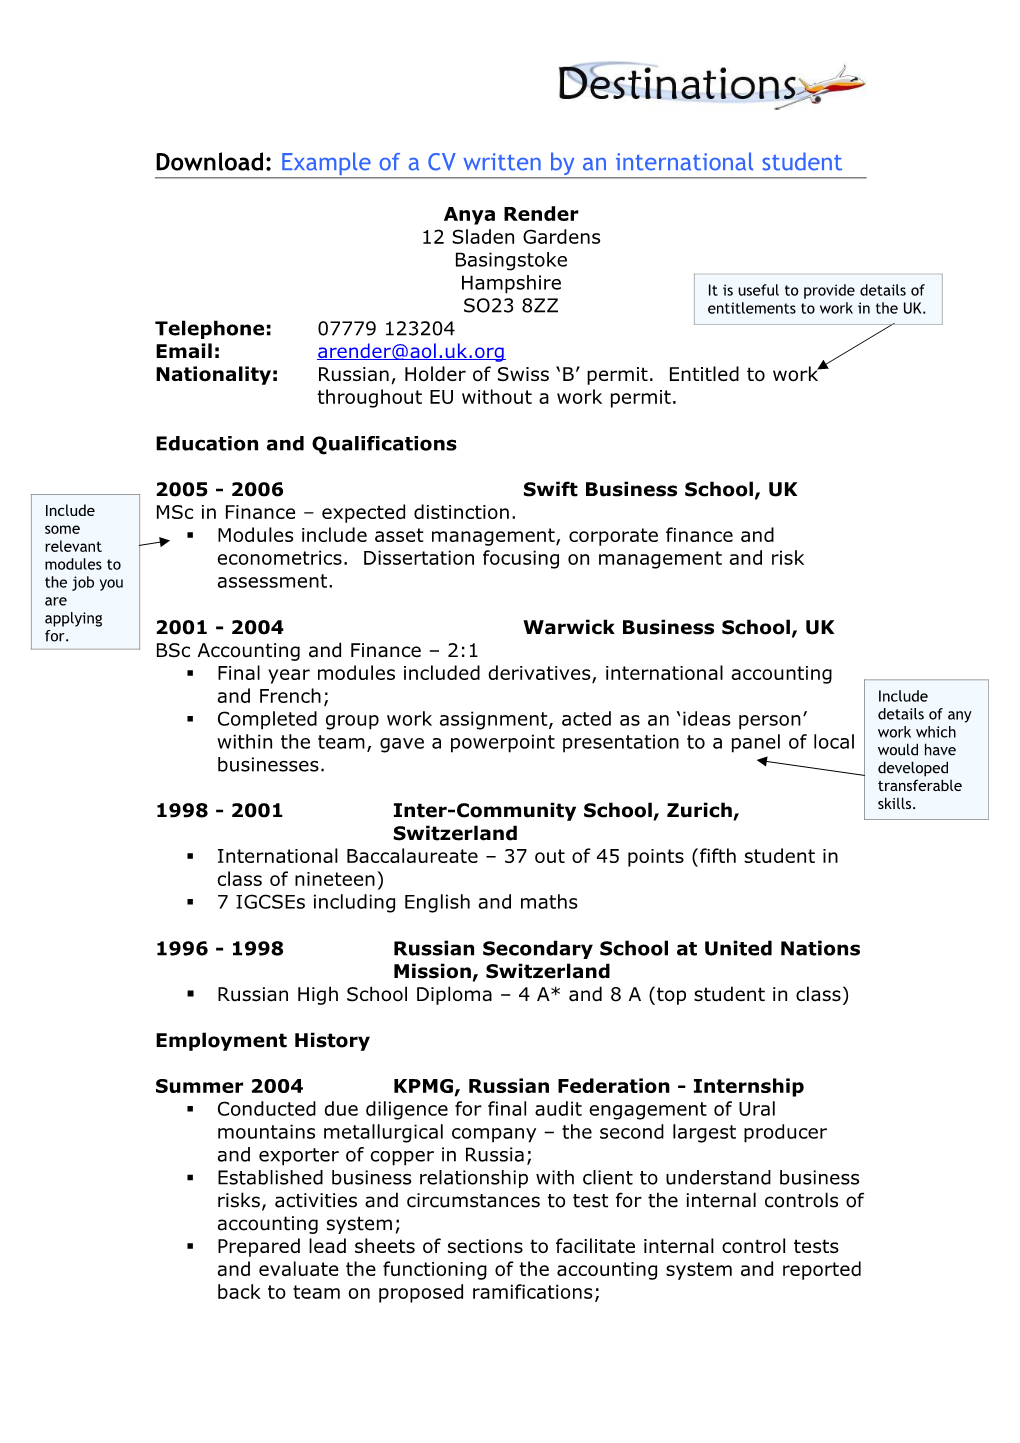 Example of a CV Written by an International Student